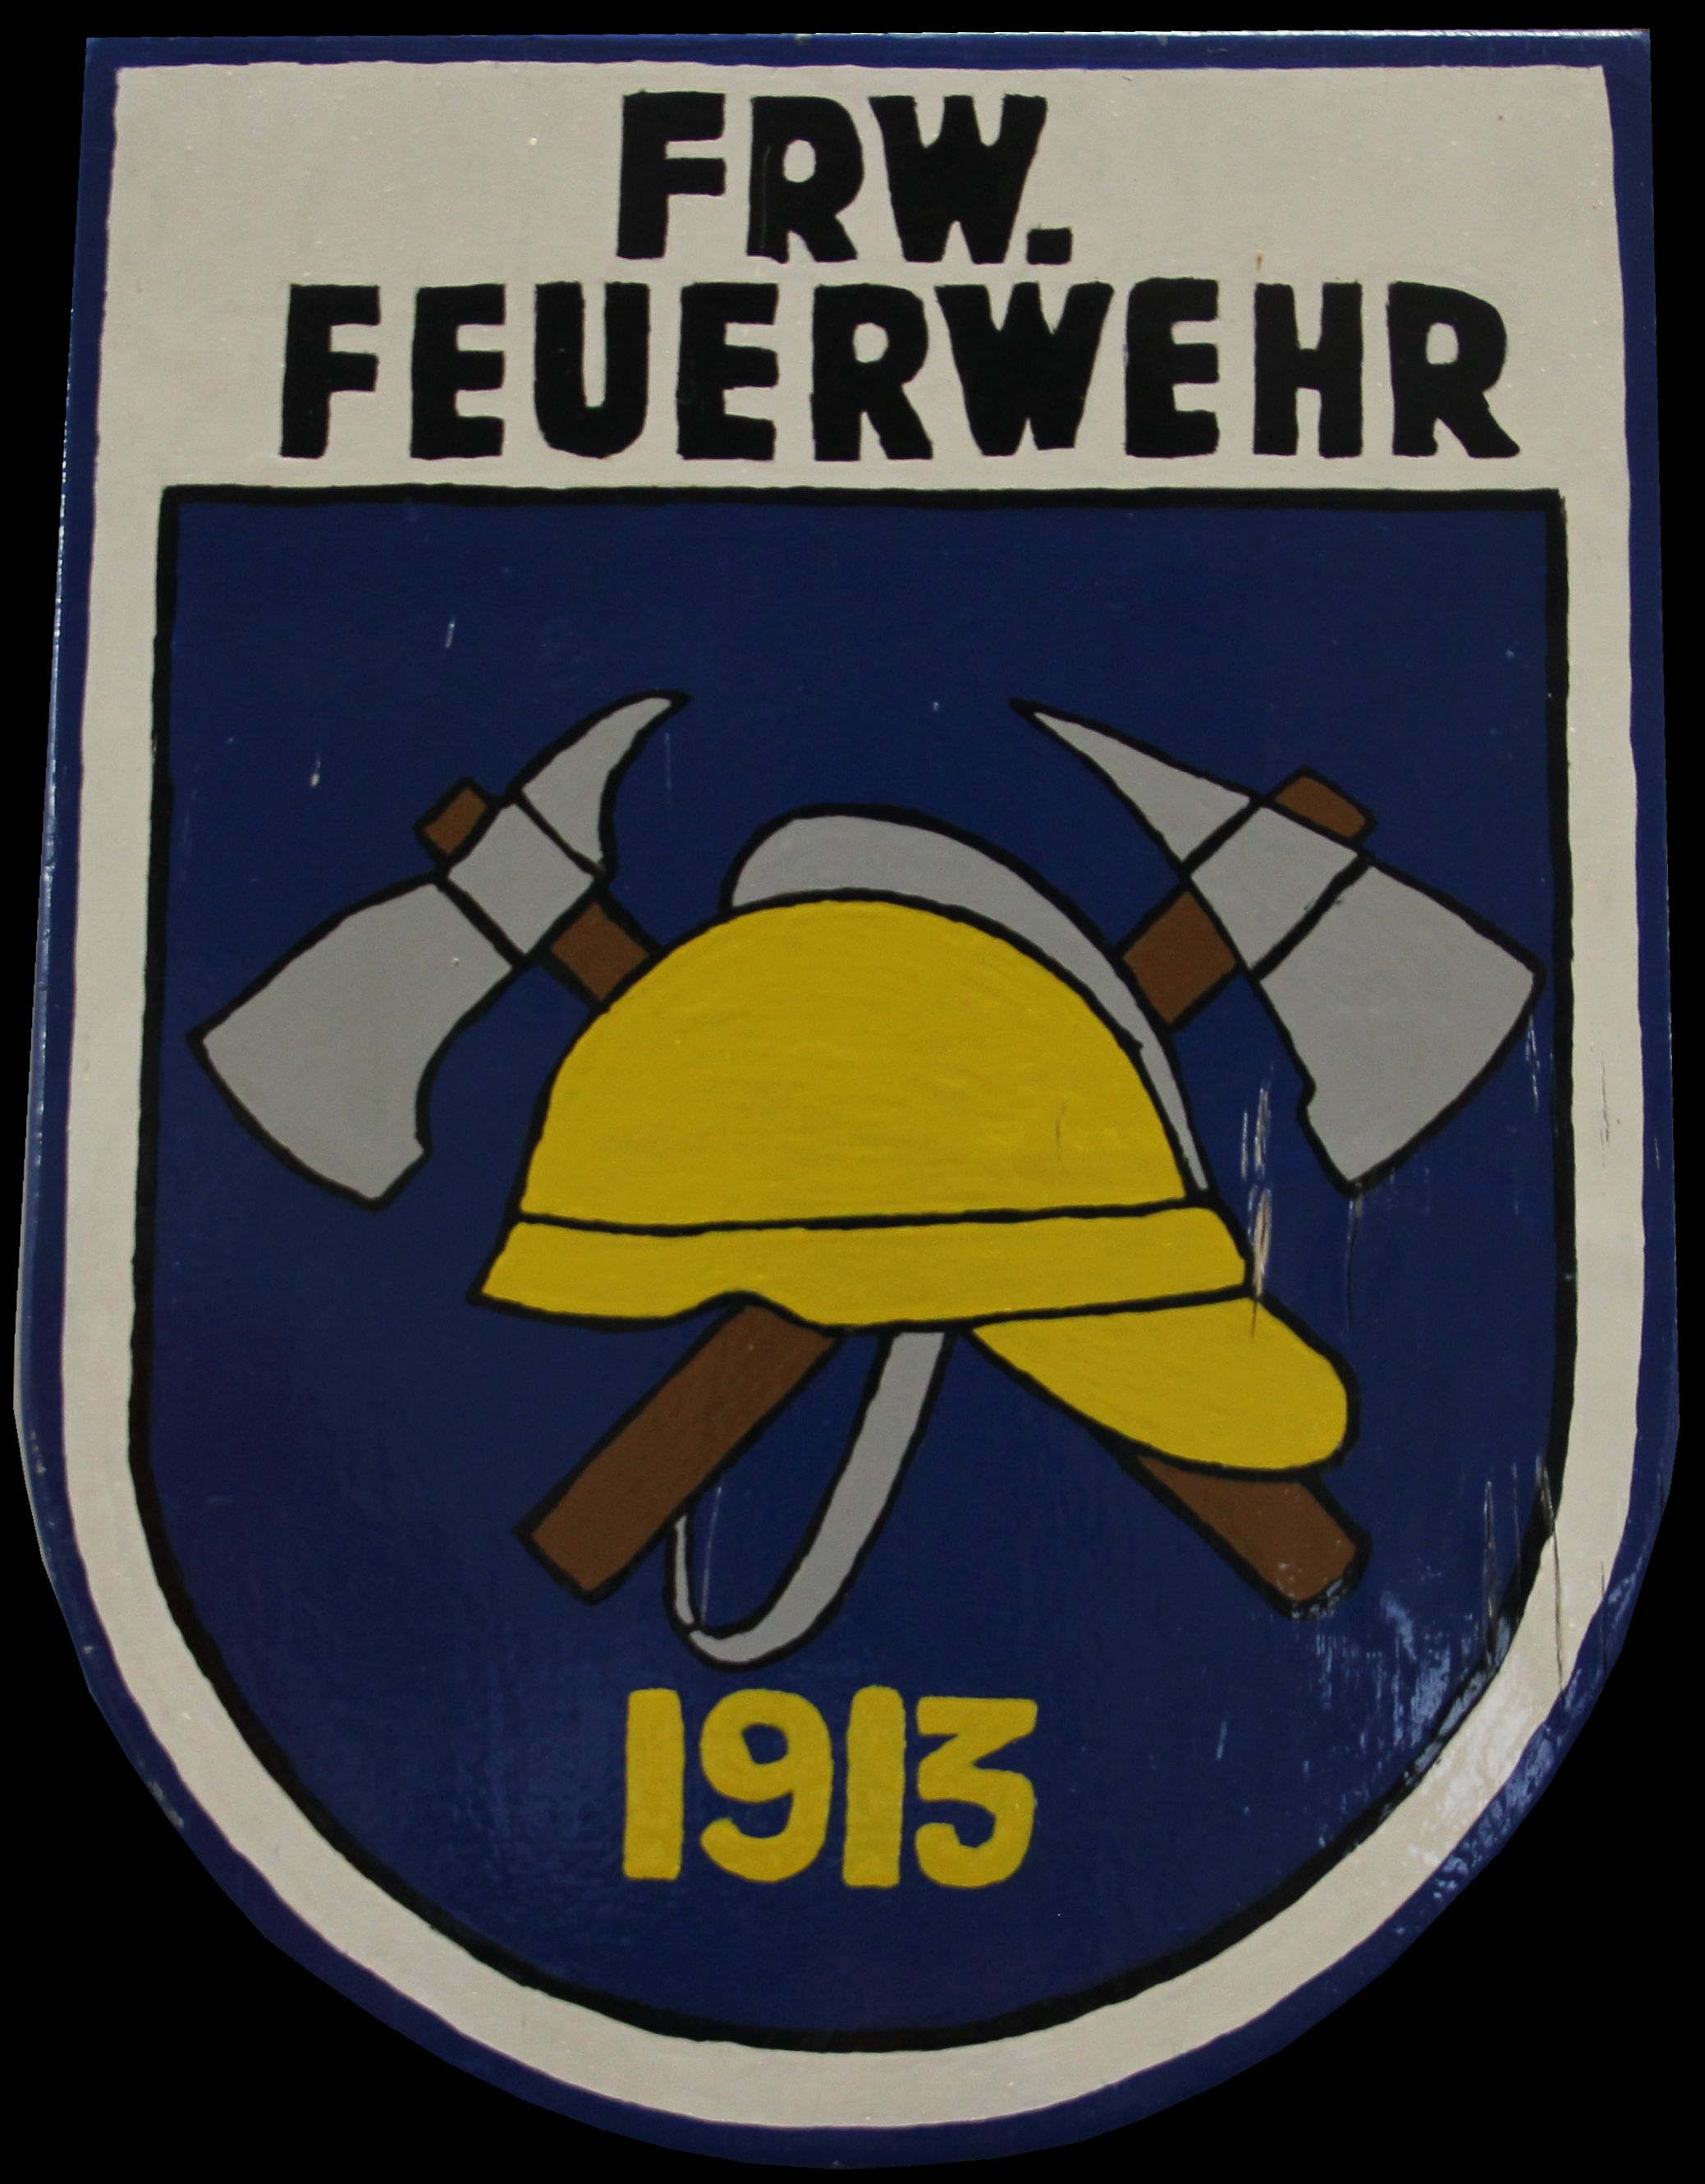 (c) Ffwarberg.de